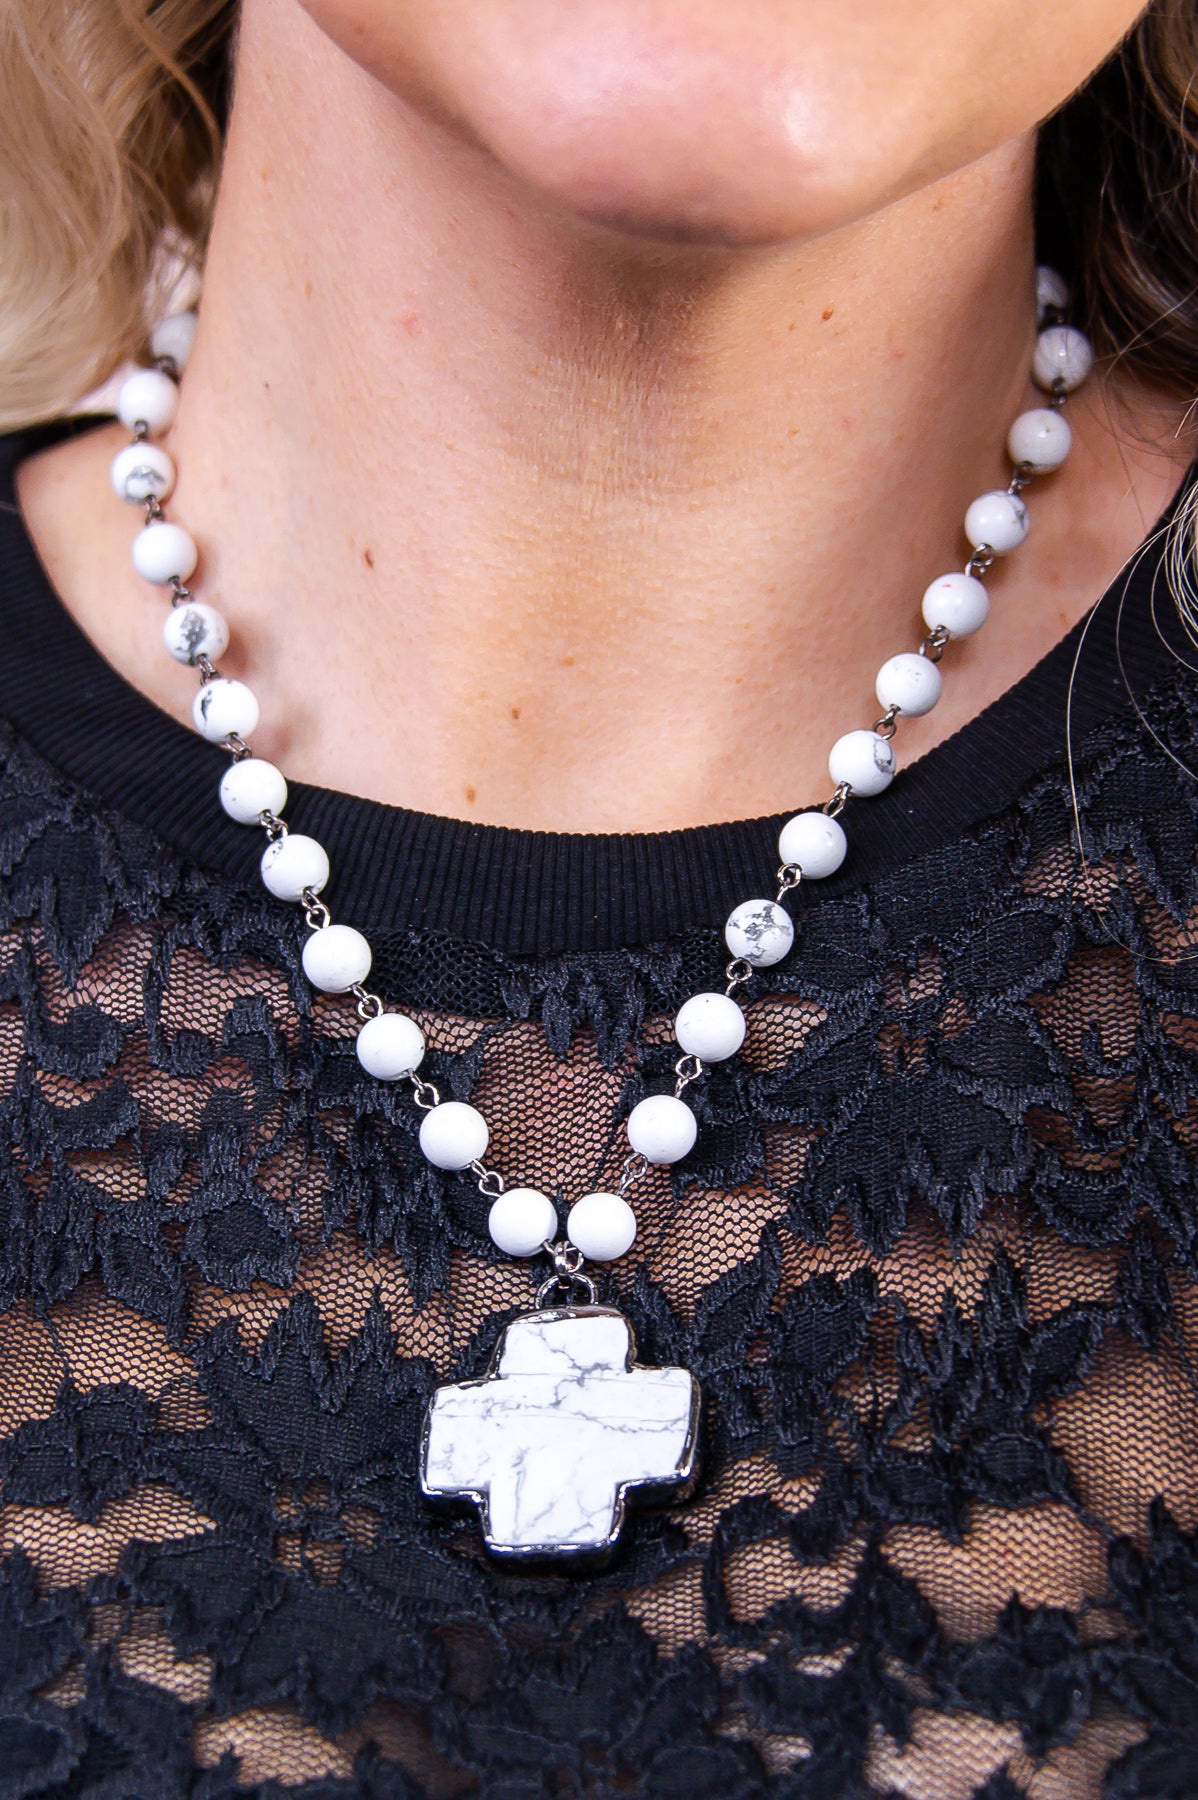 White Beaded Cross Pendant Necklace - NEK4276WH